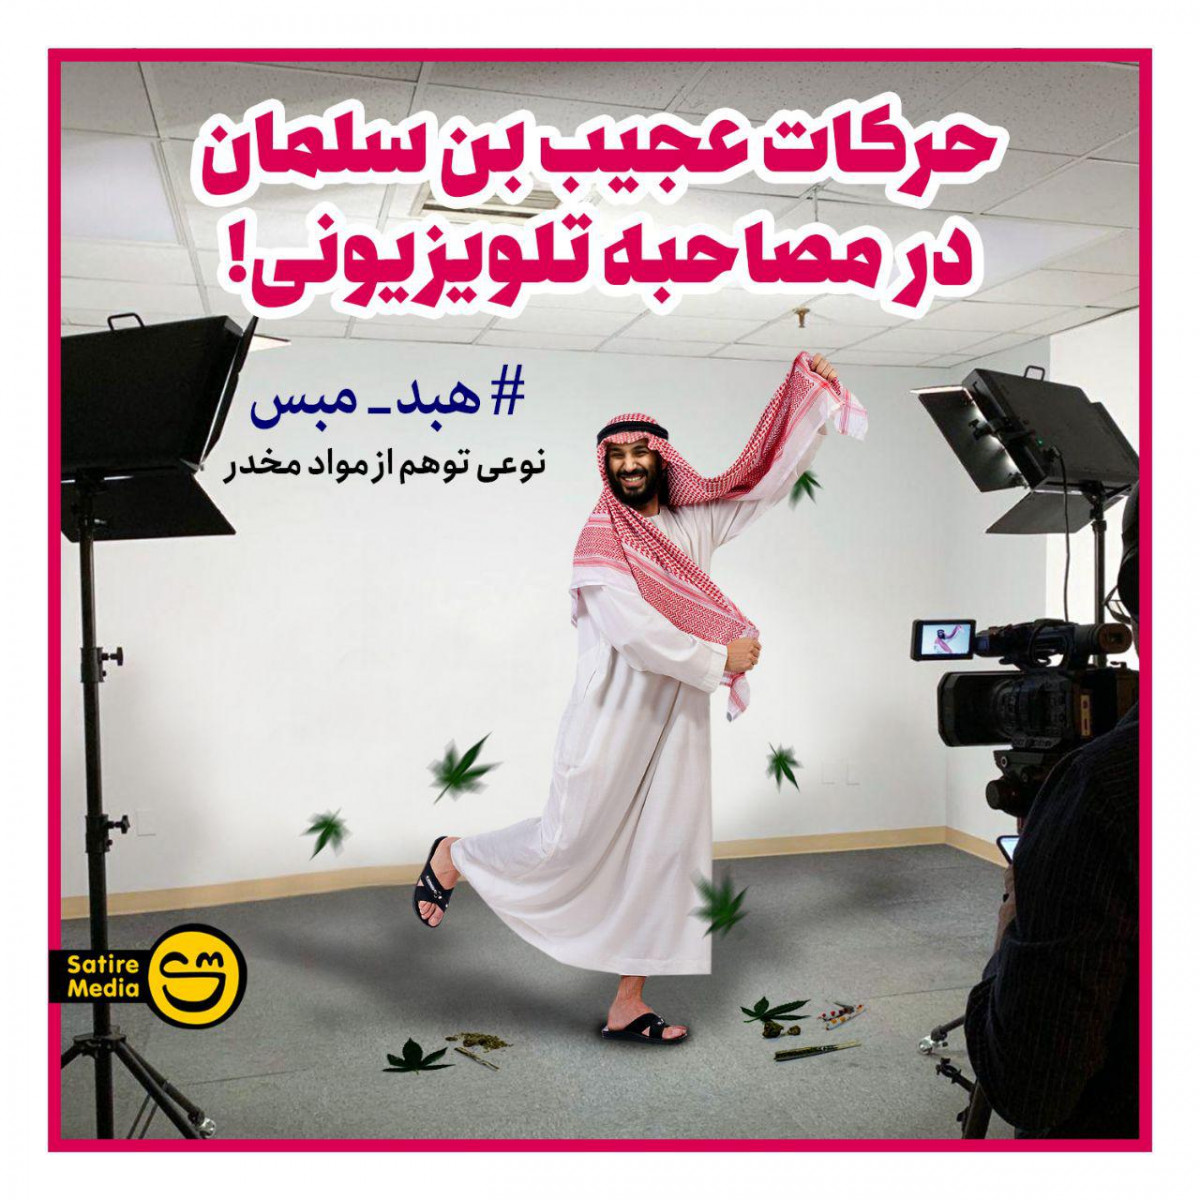 پوستر : حرکات عجیب بن سلمان در مصاحبه تلویزیونی